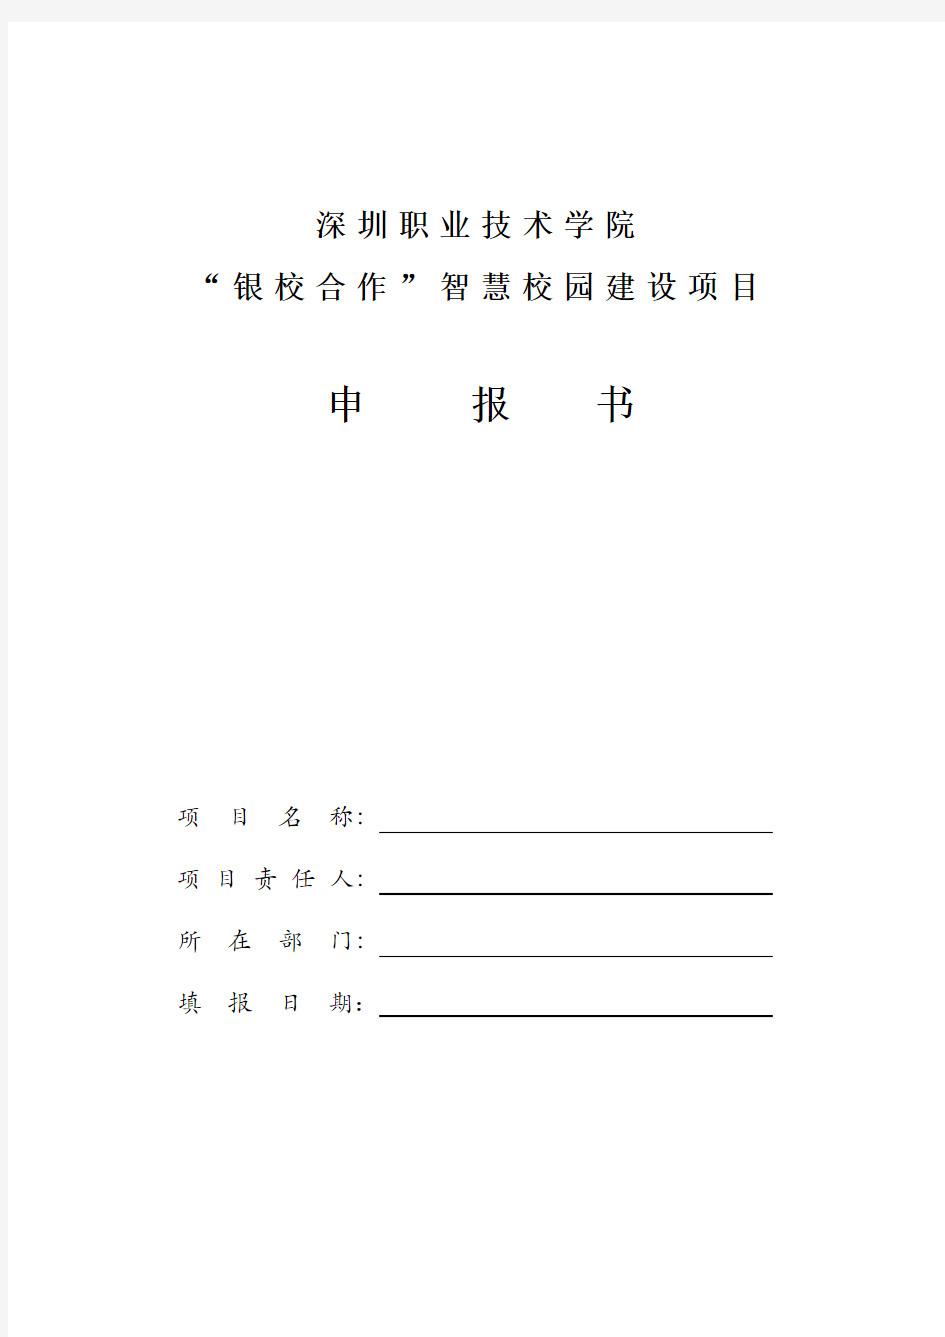 深圳职业技术学院“银校合作”智慧校园建设项目申报书 (2)